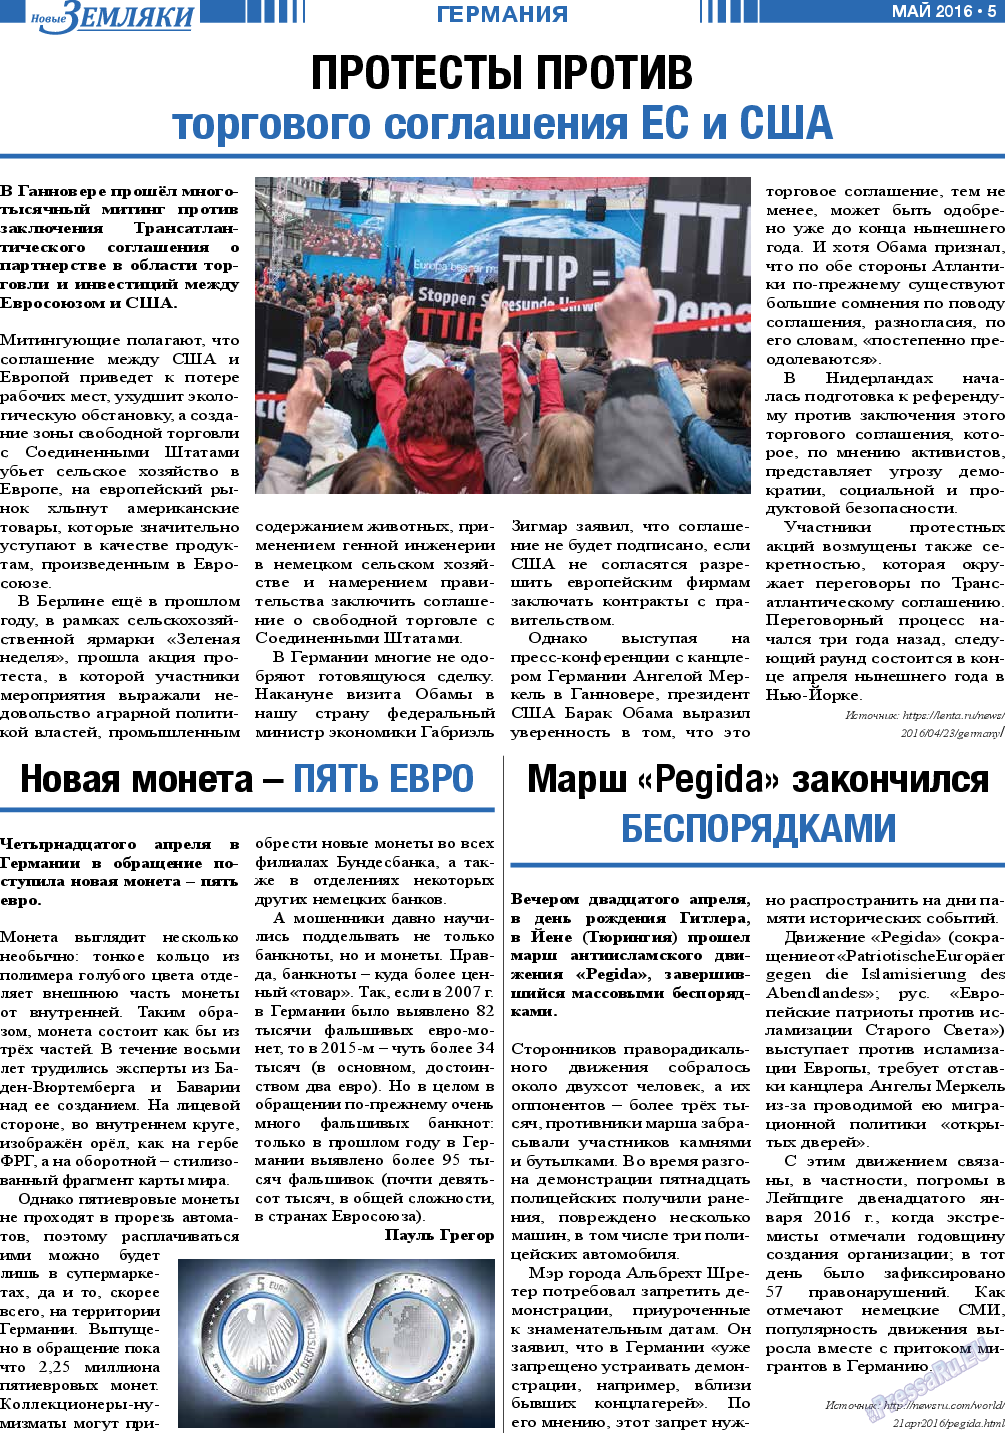 Новые Земляки, газета. 2016 №5 стр.5